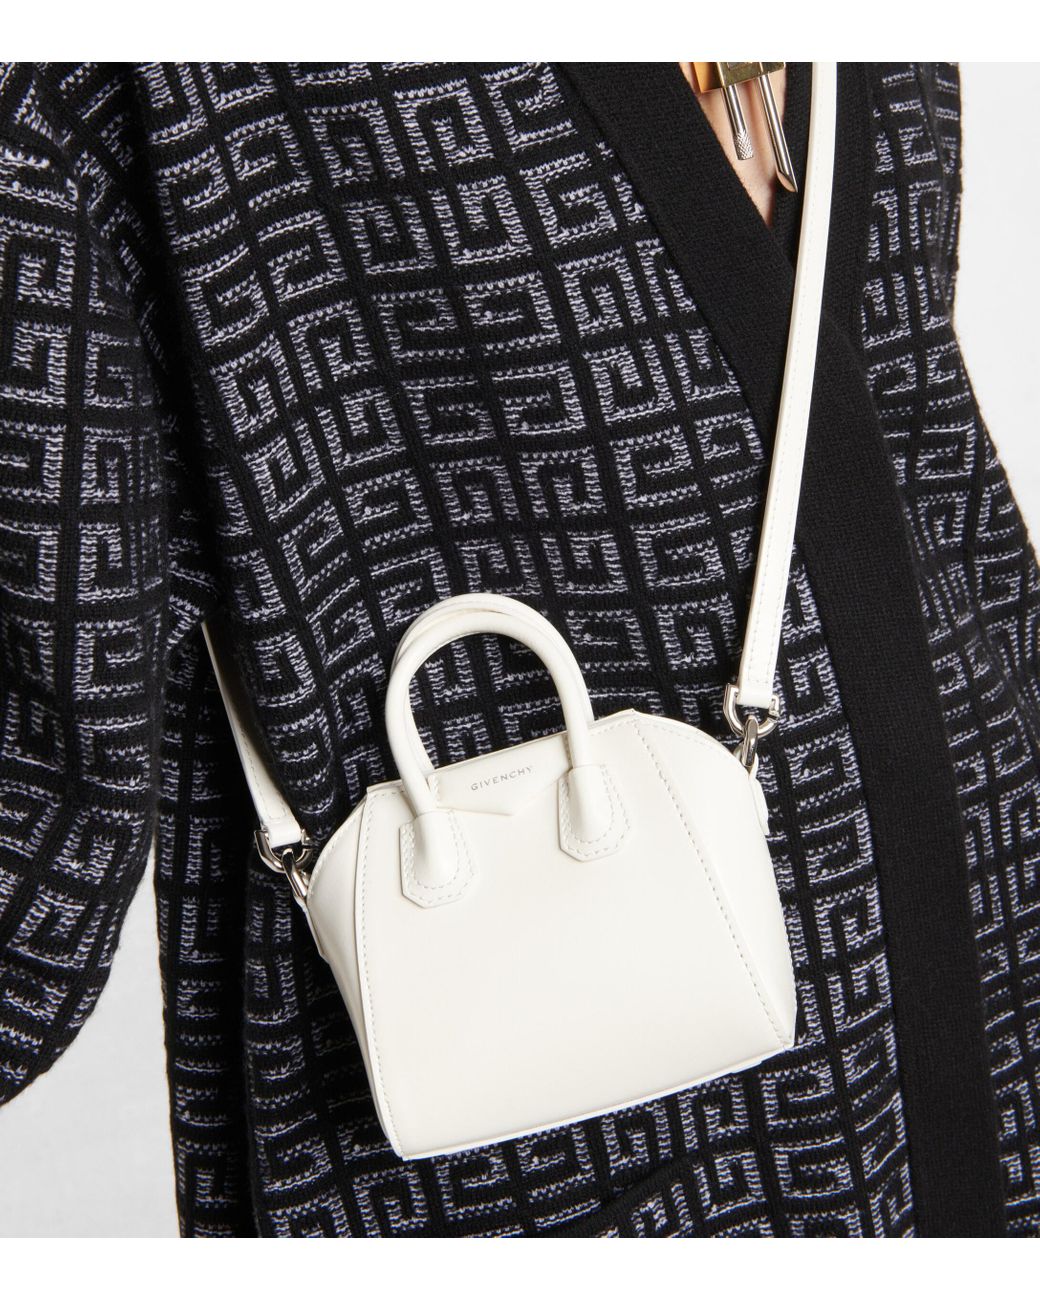 Givenchy Antigona Micro Leather Tote Bag in White